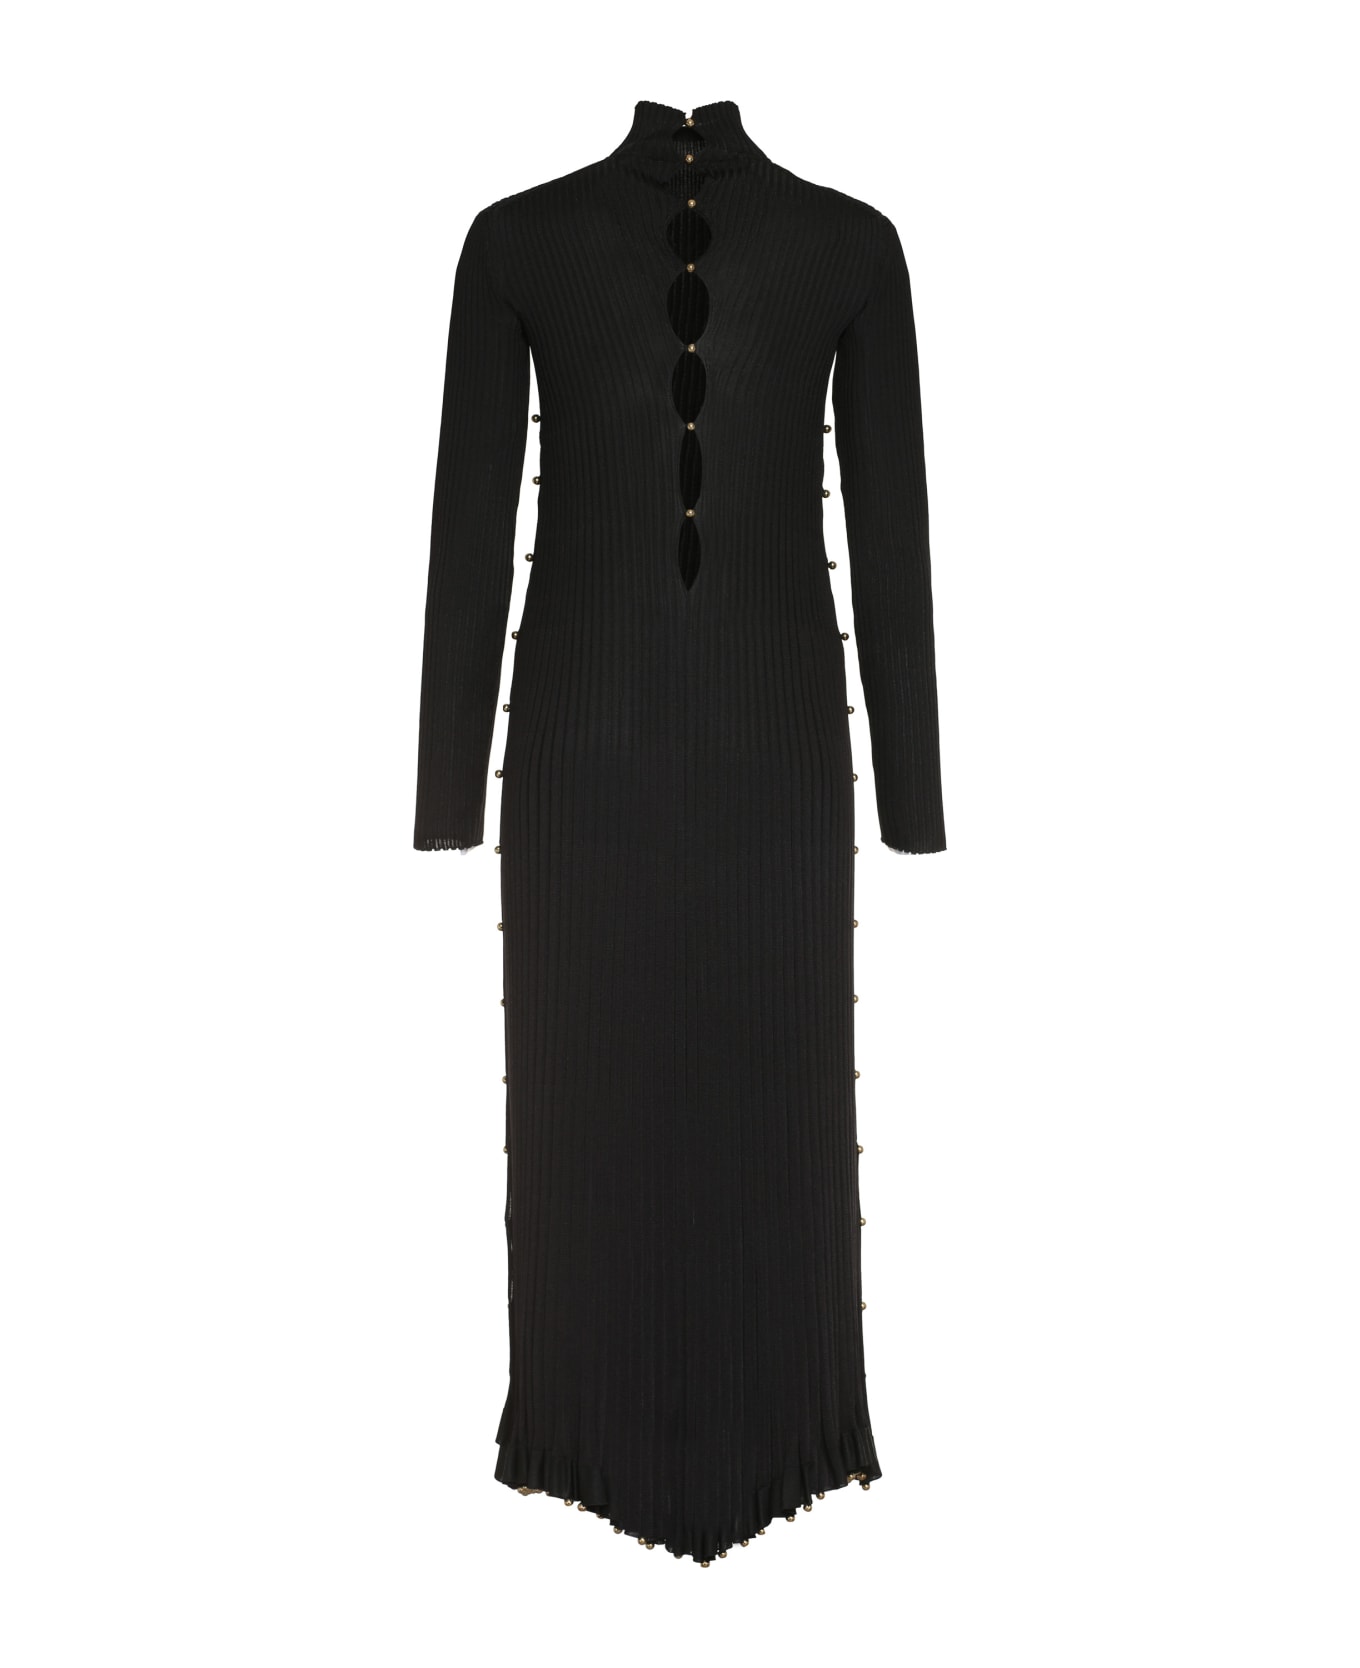 Bottega Veneta Pleated Dress - black